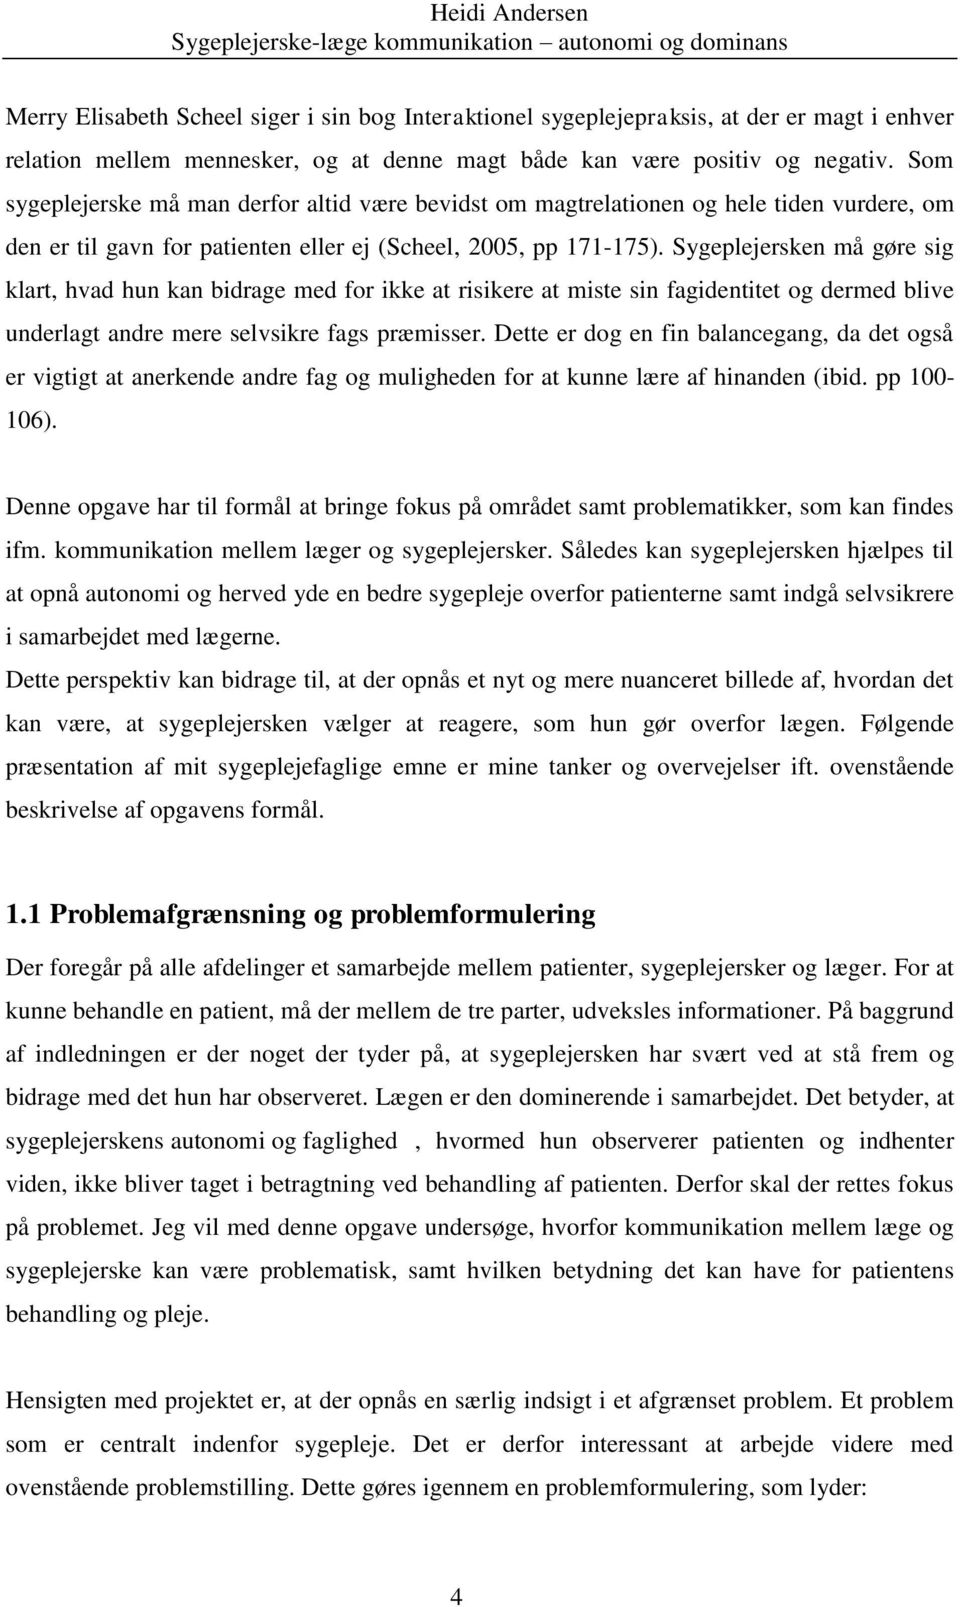 Sygeplejerske-læge kommunikation autonomi og dominans - PDF Free Download